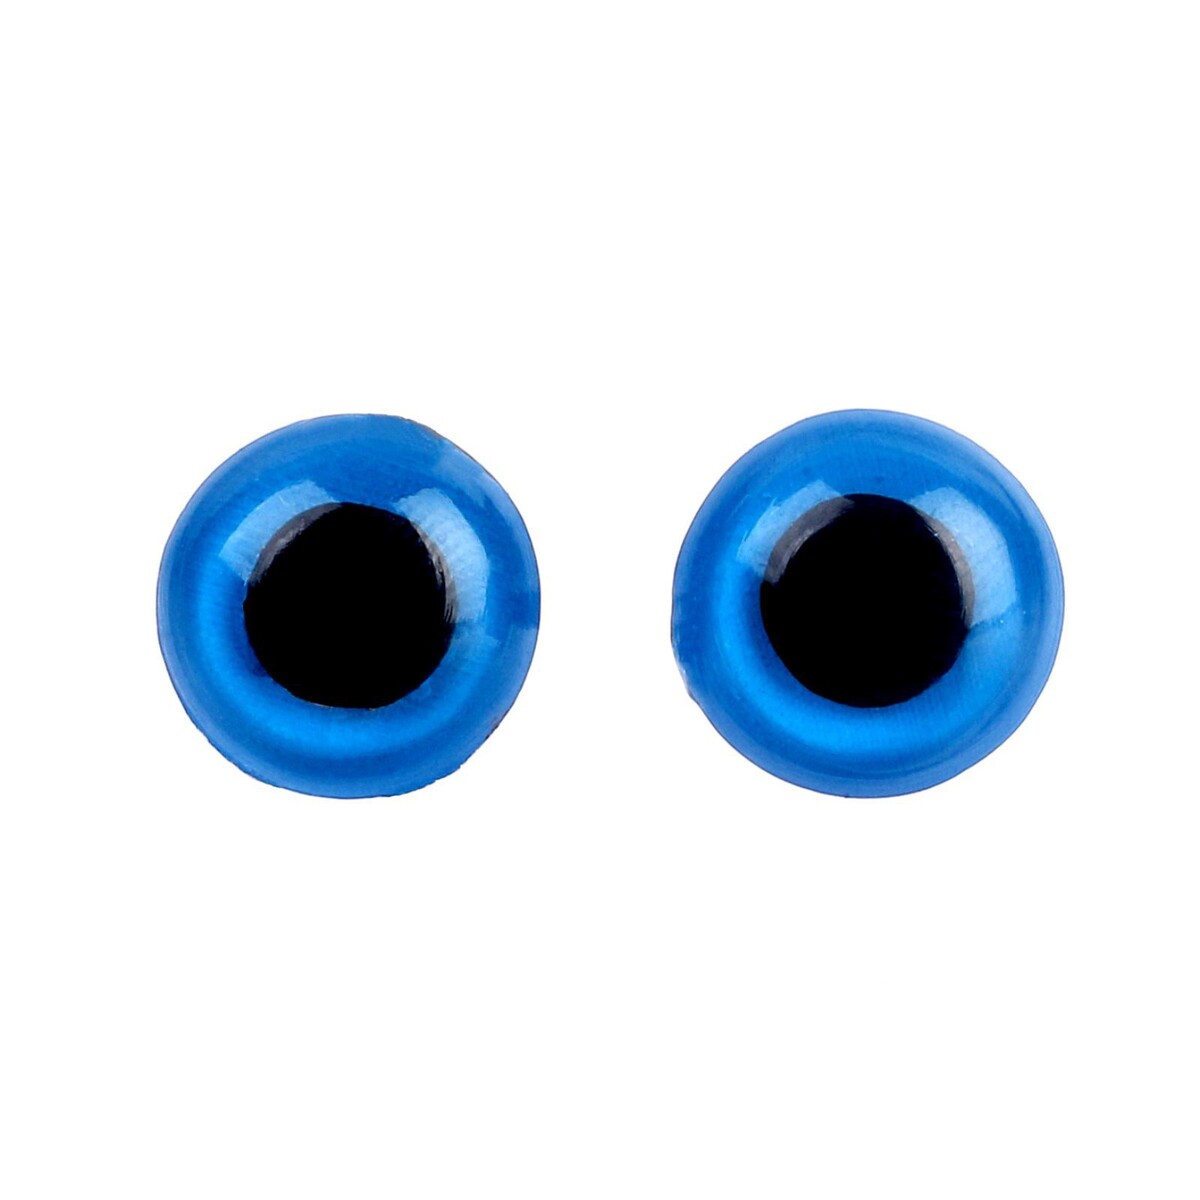 Глаза винтовые с заглушками, полупрозрачные, набор 4 шт, цвет голубой, размер 1 шт: 1×1 см глаза винтовые с заглушками набор 4 шт зеленый размер 1 шт 1 3×1 см